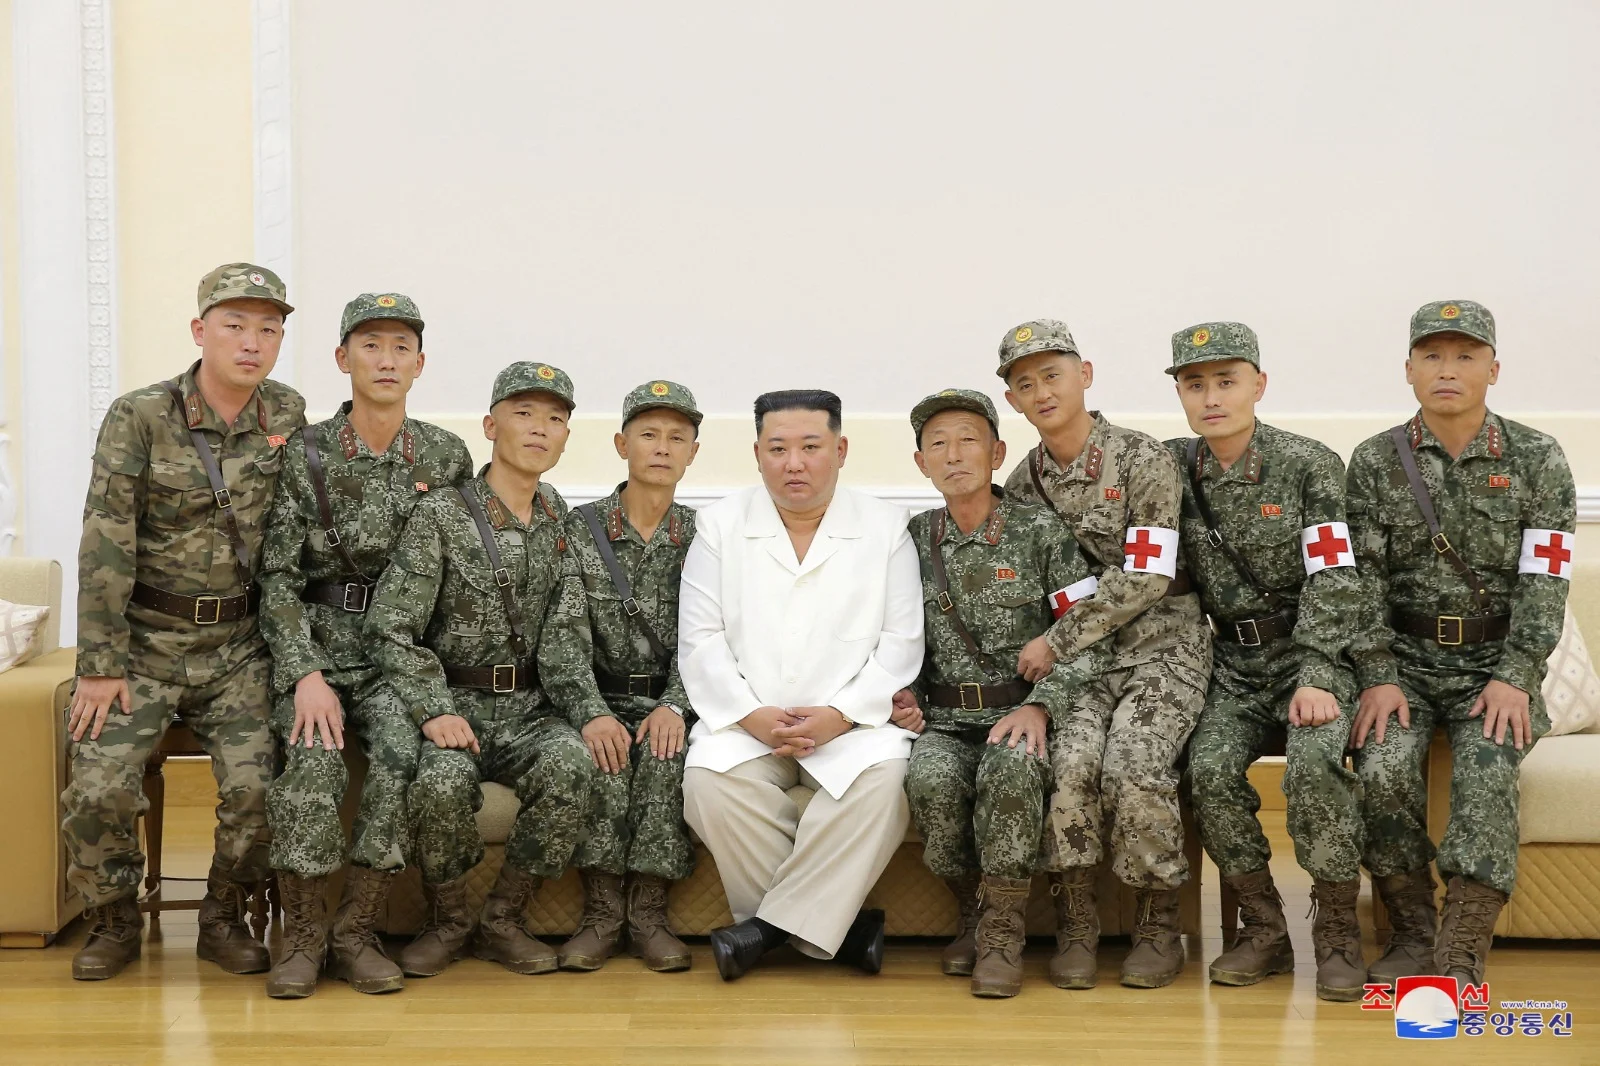 יעביר חימוש לרוסיה? קים ג'ונג און לצד חייל צפון קוראינים